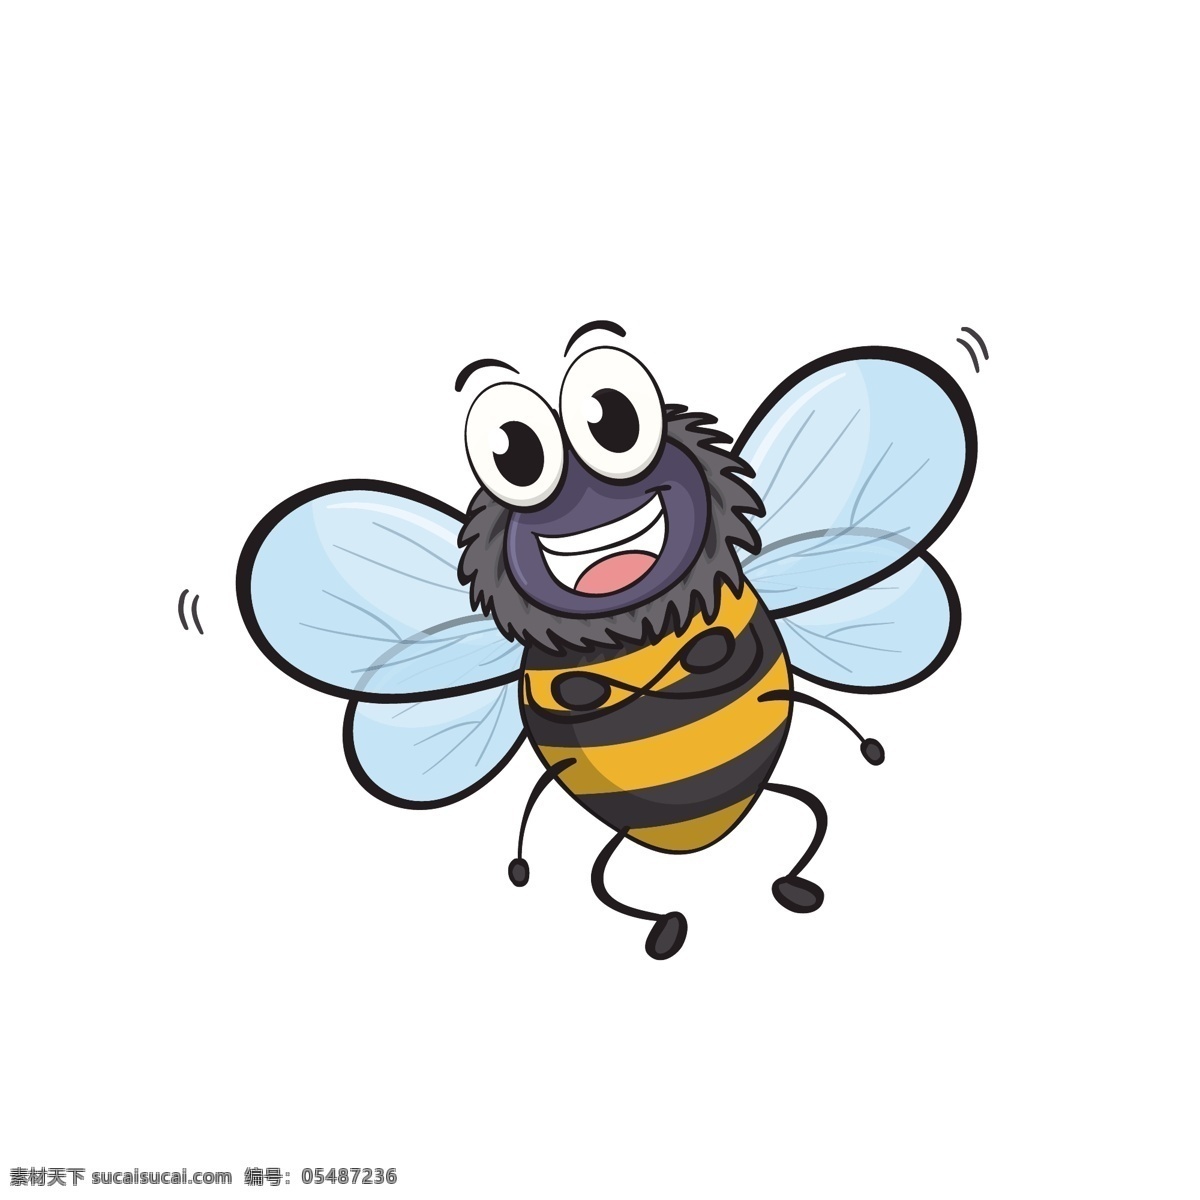 开心 小 蜜蜂 矢量 小蜜蜂 卡通 卡通蜜蜂 卡通小蜜蜂 可爱 可爱的 可爱的小蜜蜂 可爱小蜜蜂